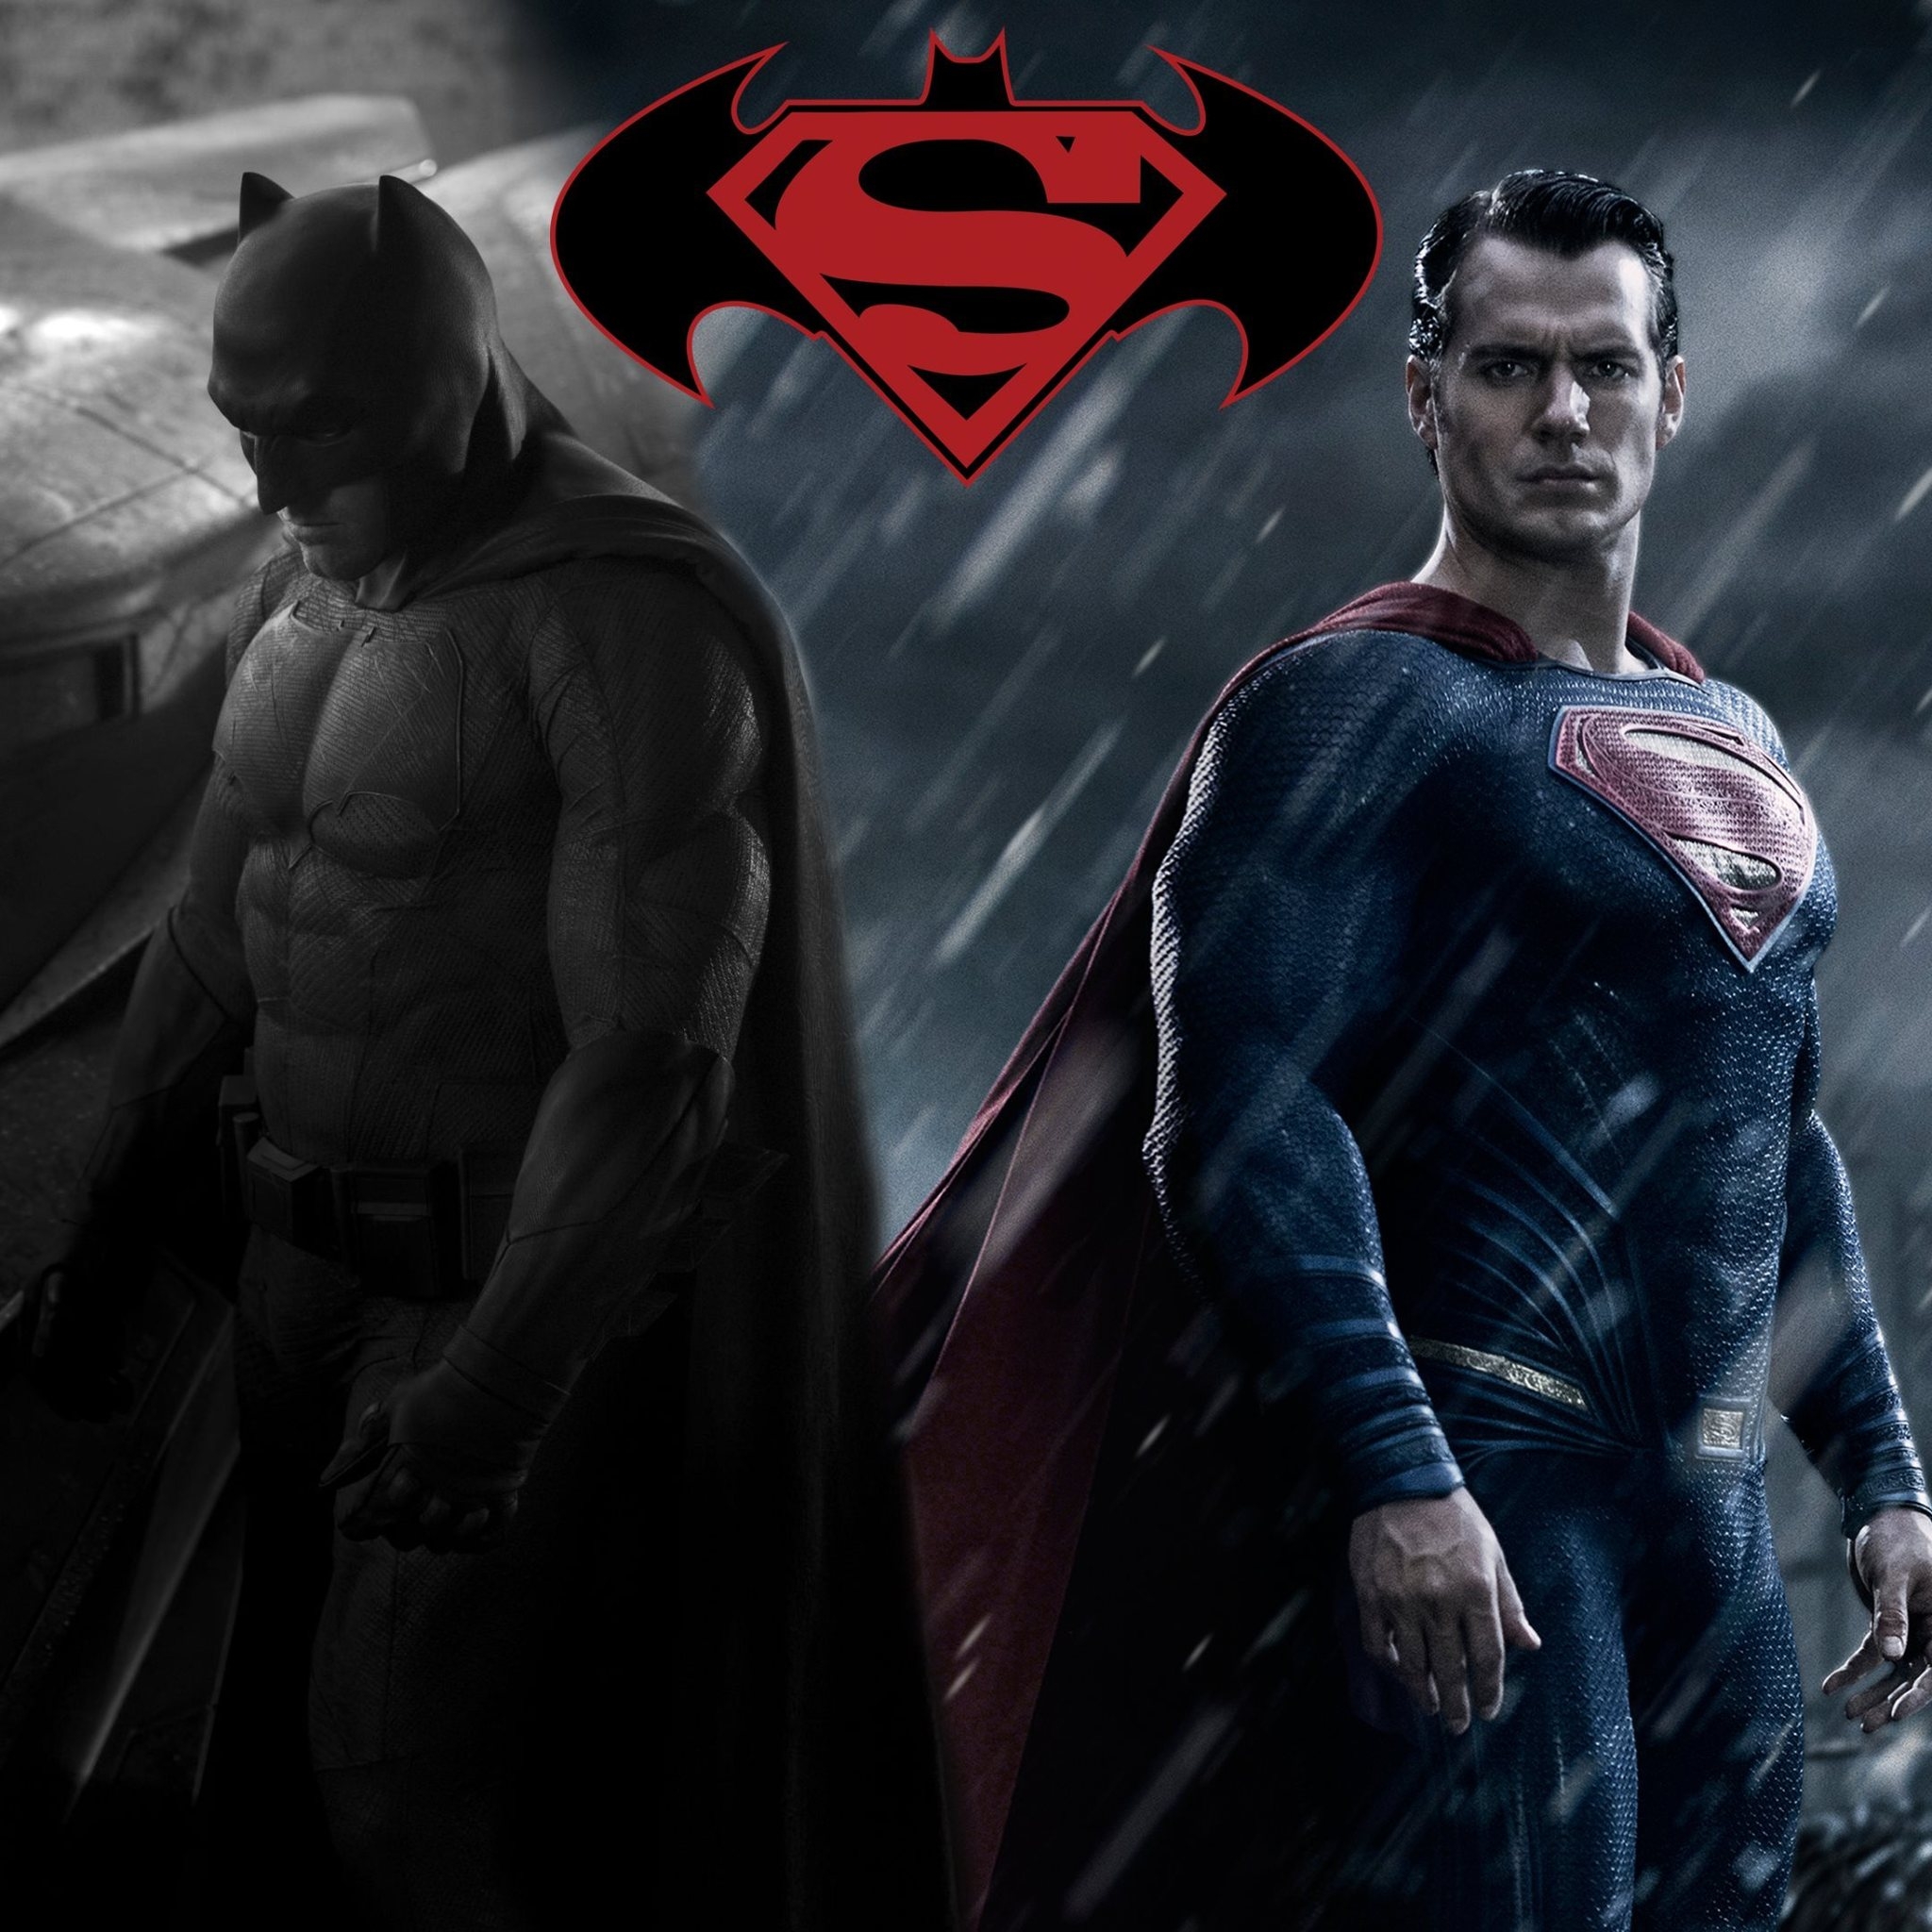 Batman vs Superman Fan Art for 2048 x 2048 New iPad resolution